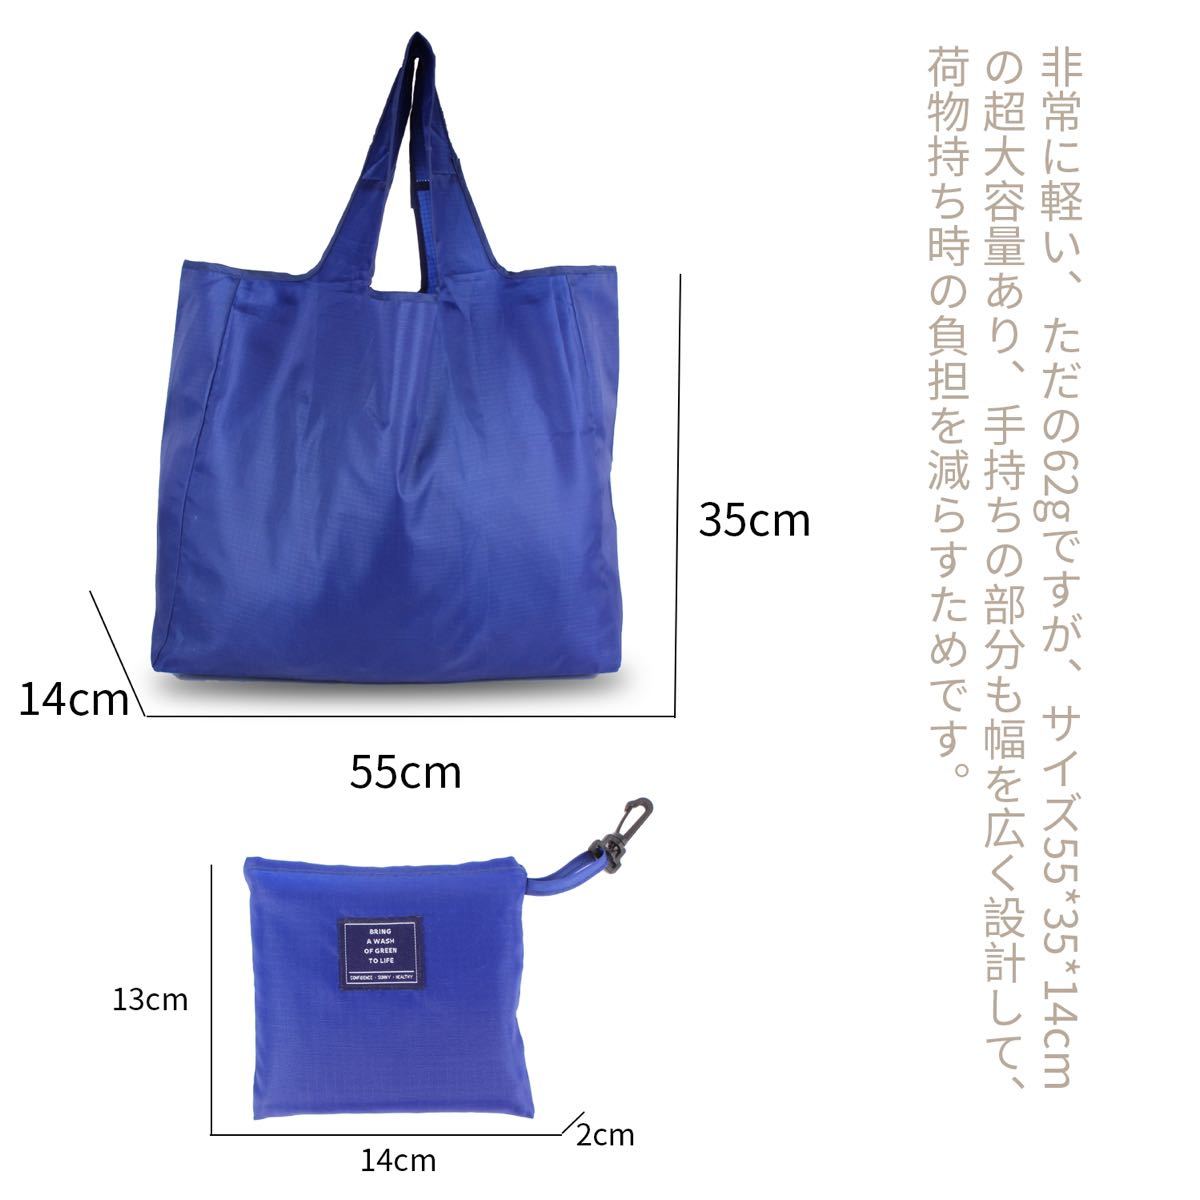 【日本品質】エコバッグ 買い物バッグ 折りたたみ 大容量 軽量 ネイビー